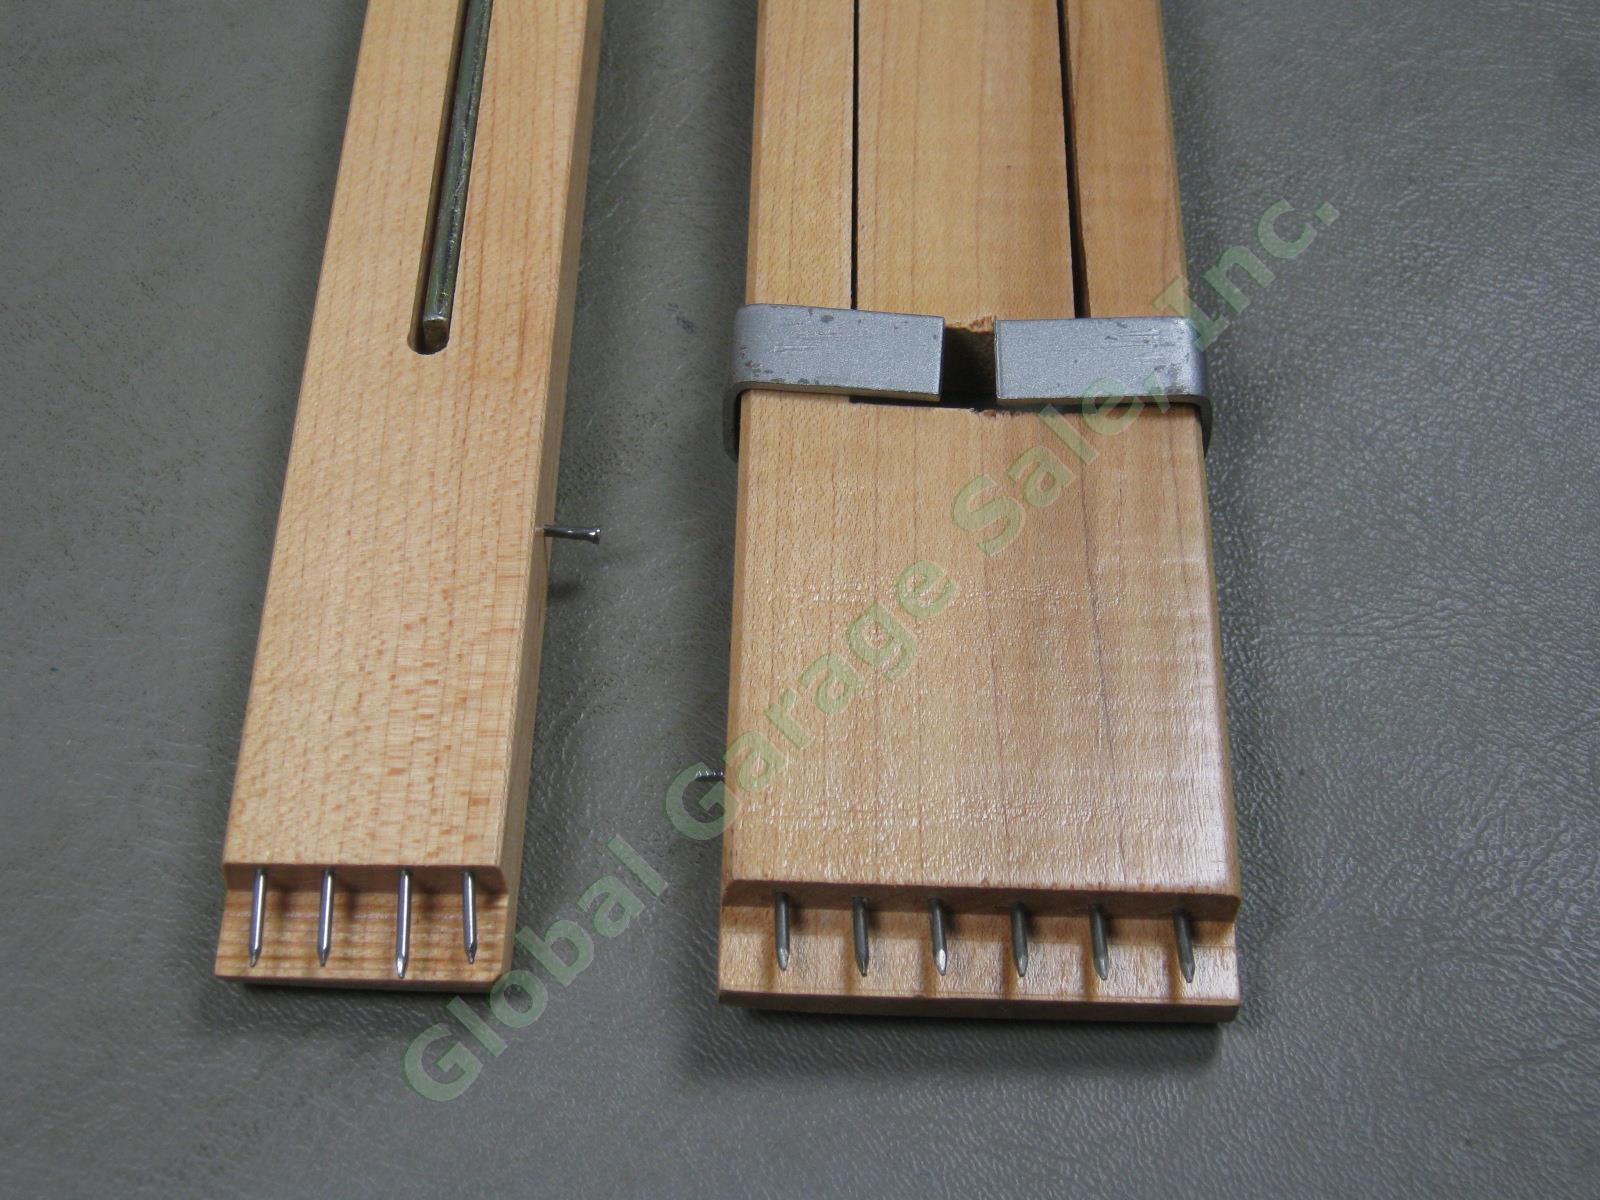 2 Leclerc Adjustable Wooden Weaving Loom Temples Lot 16"-22" +36"-60" NO RESERVE 2